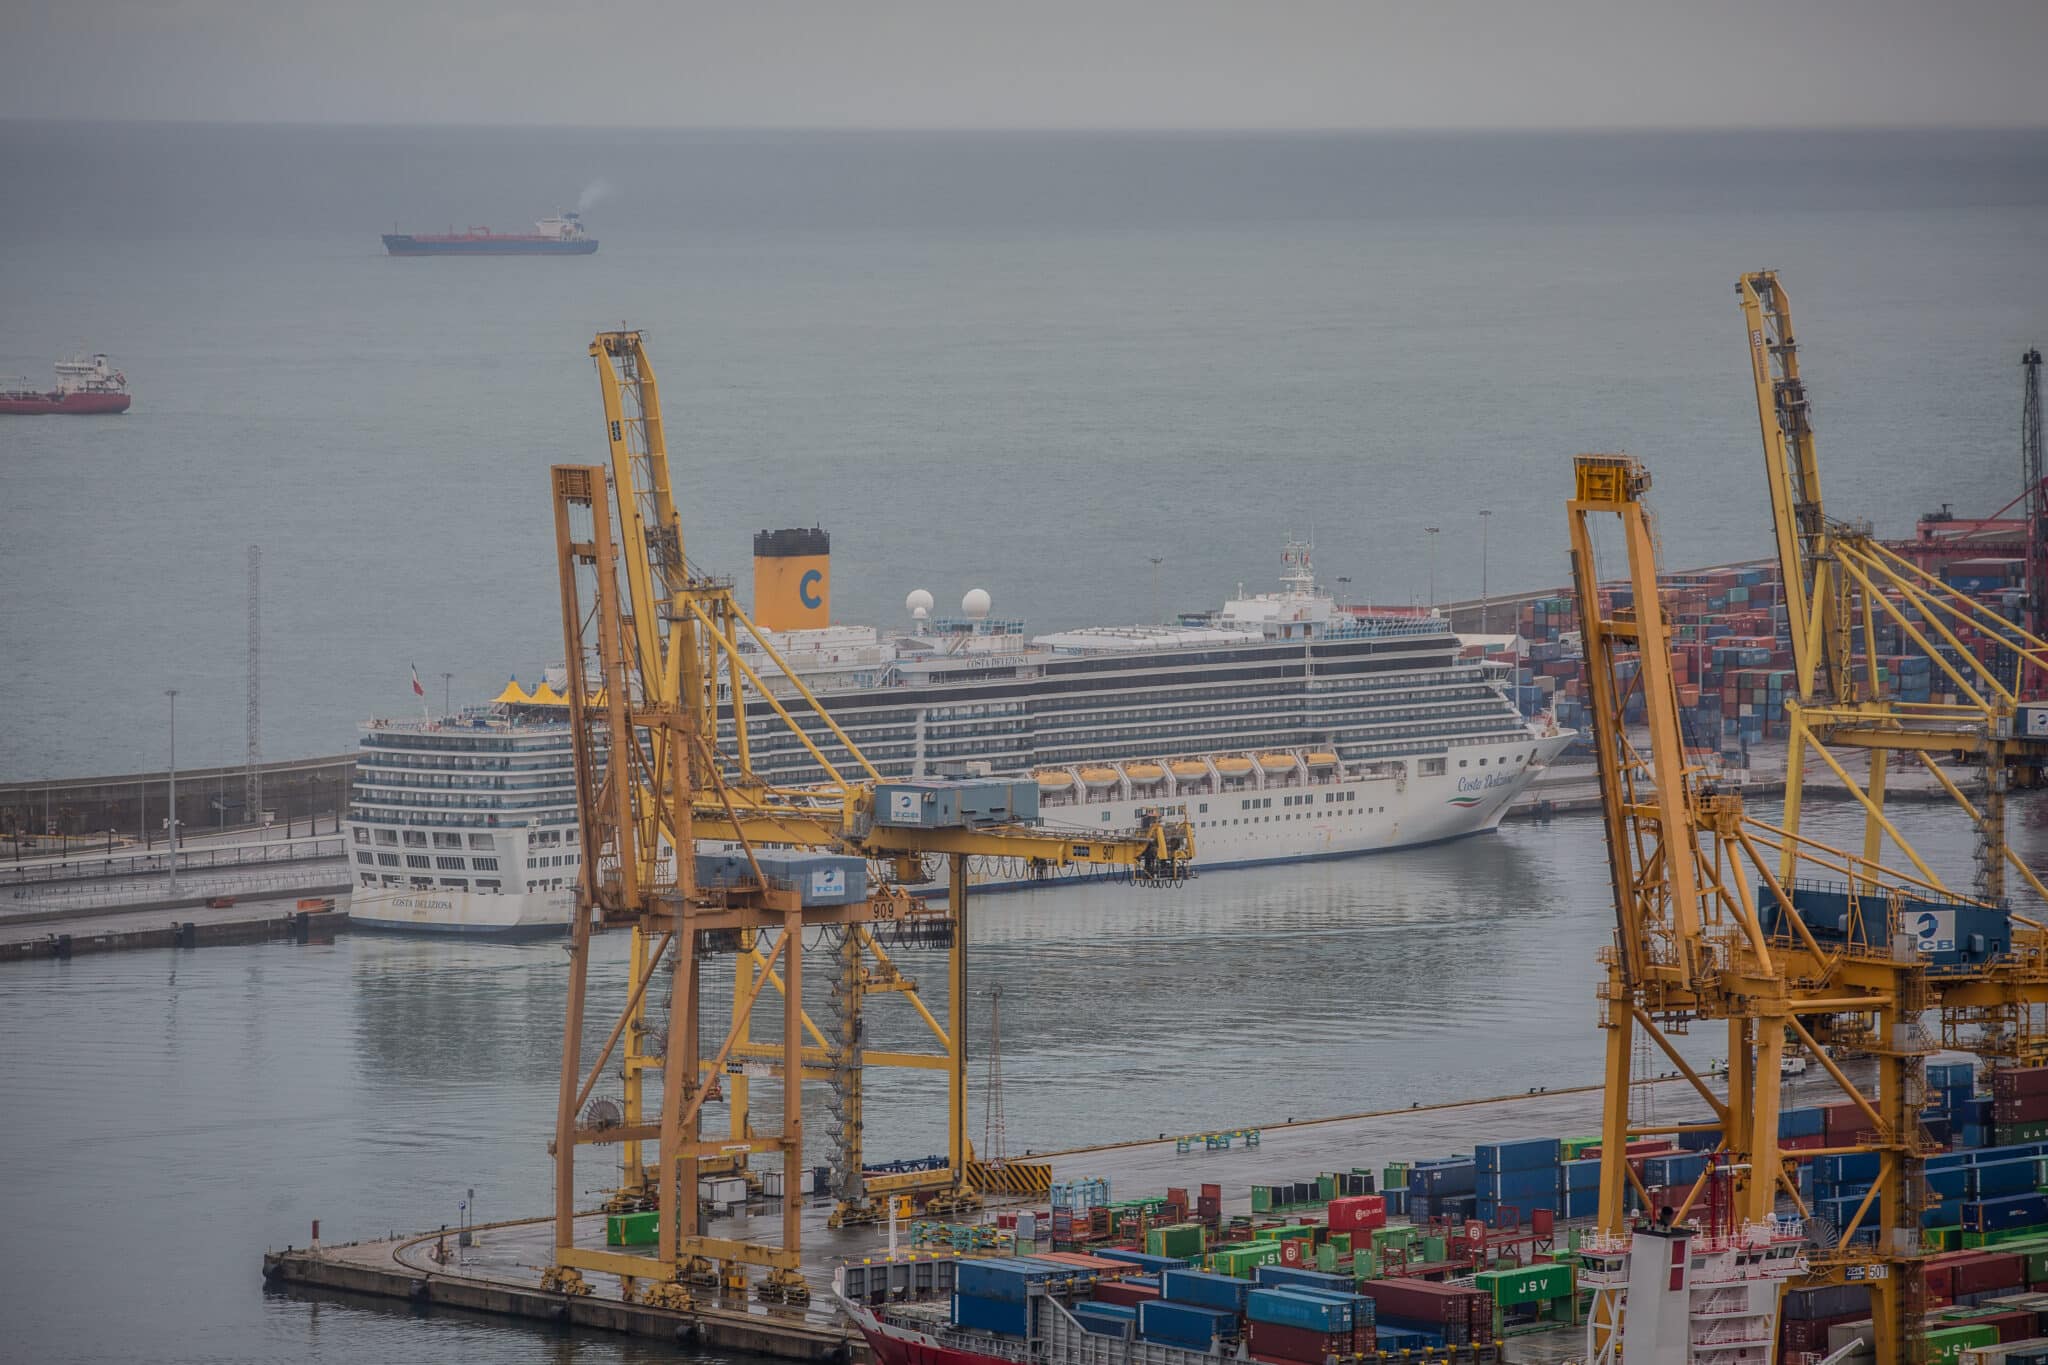 El crucero Costa Deliziosa atracado en el puerto de Barcelona, uno de los focos de contaminación de la ciudad.